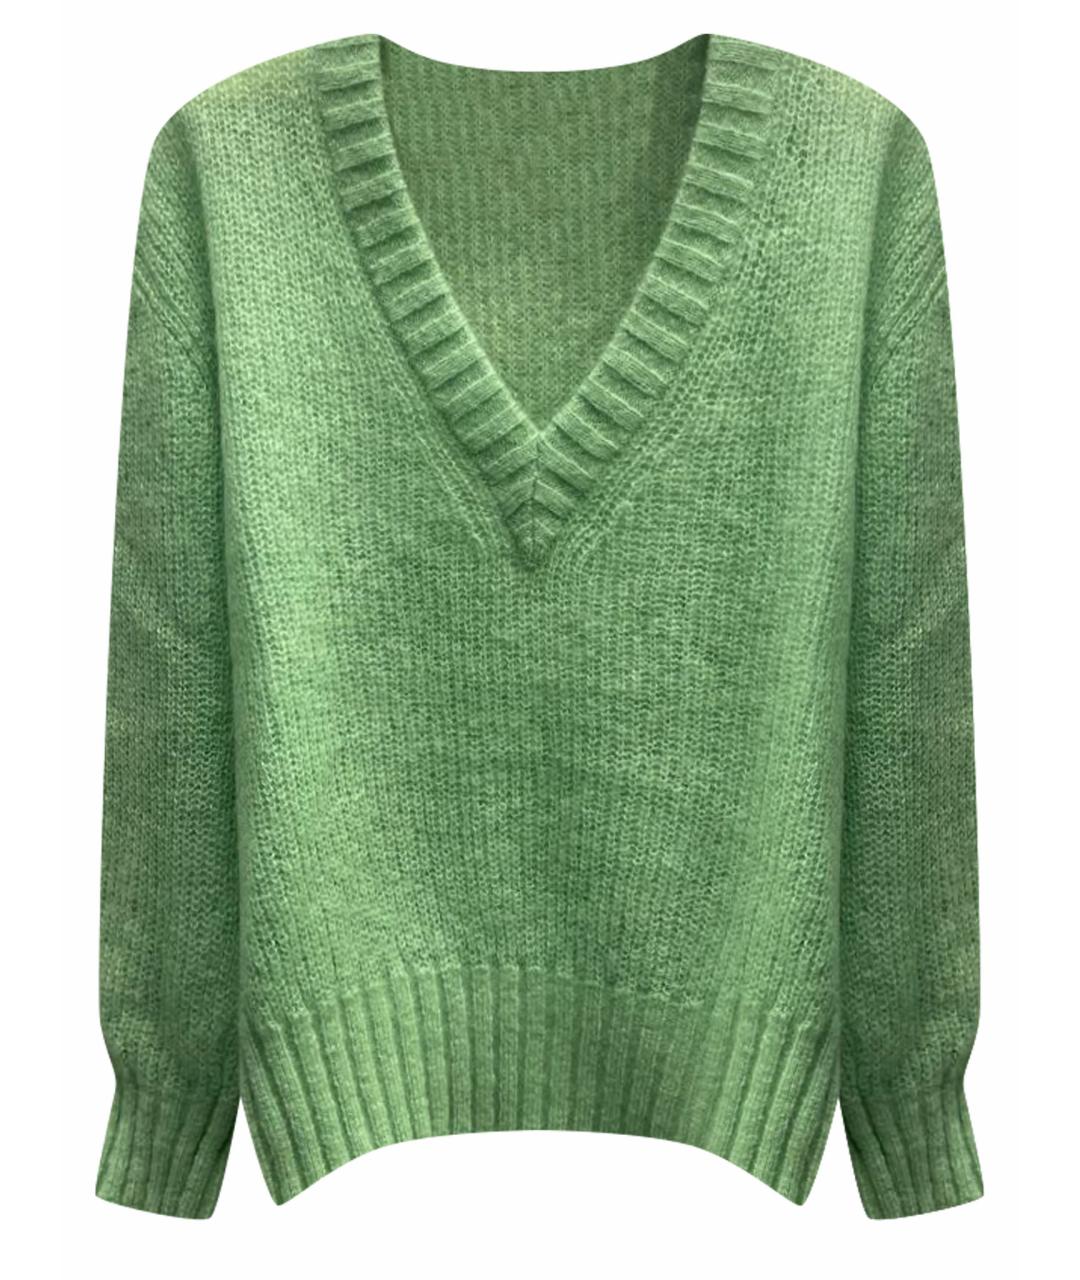 HUGO BOSS Зеленый шерстяной джемпер / свитер, фото 1